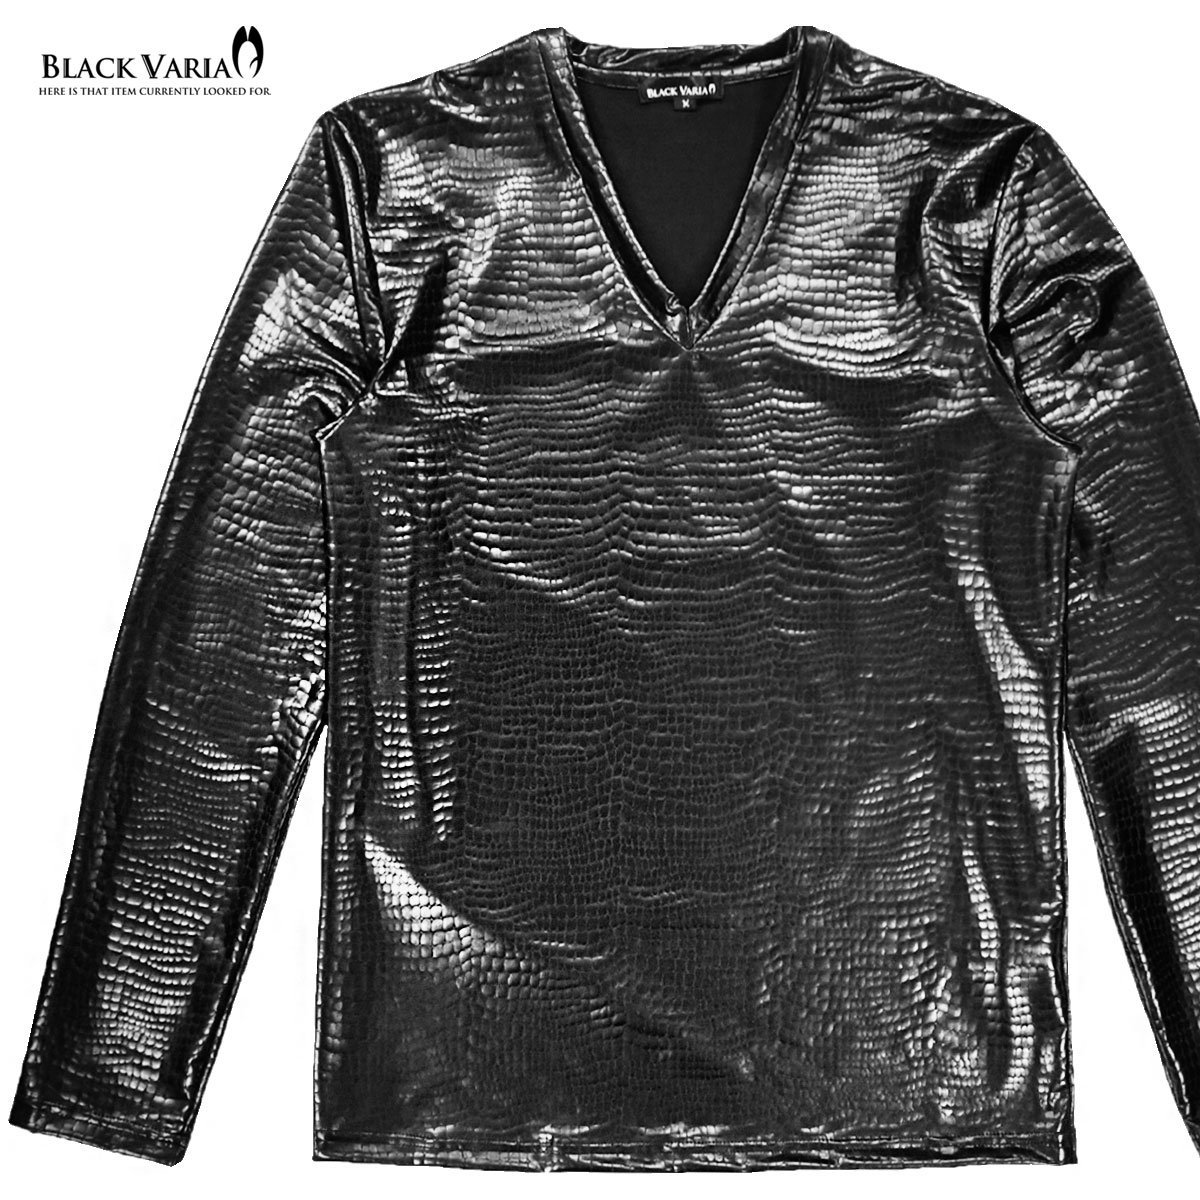 183711-bk BlackVaria ロンT クロコダイル Vネック 光沢 メタリック 長袖Tシャツ mens メンズ(ブラック黒) L ステージ衣装_画像5